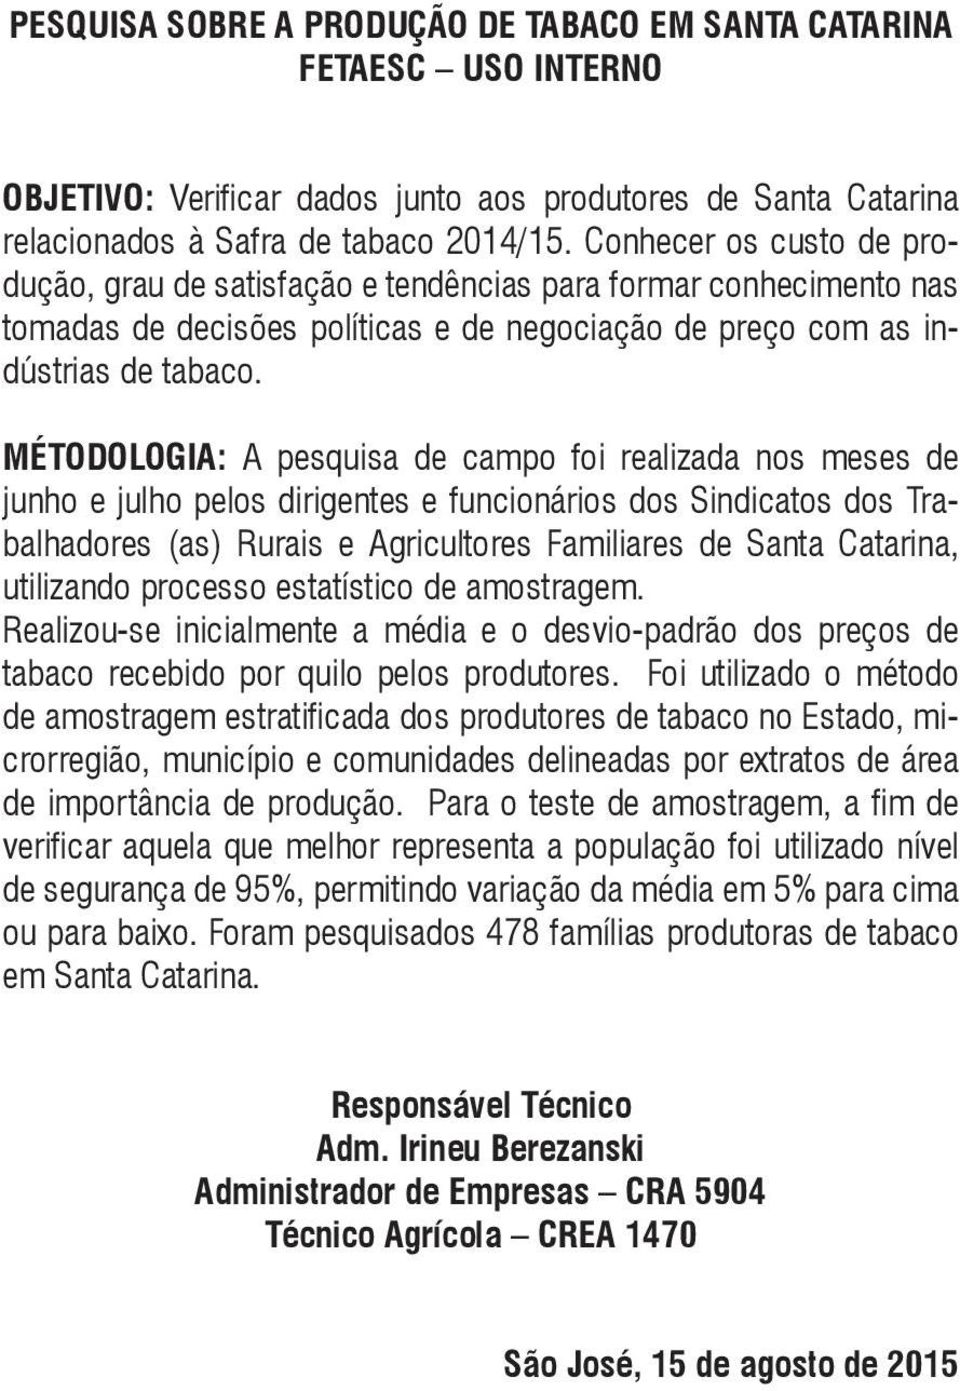 MÉTODOLOGIA: A pesquisa de campo foi realizada nos meses de junho e julho pelos dirigentes e funcionários dos Sindicatos dos Trabalhadores (as) Rurais e Agricultores Familiares de Santa Catarina,